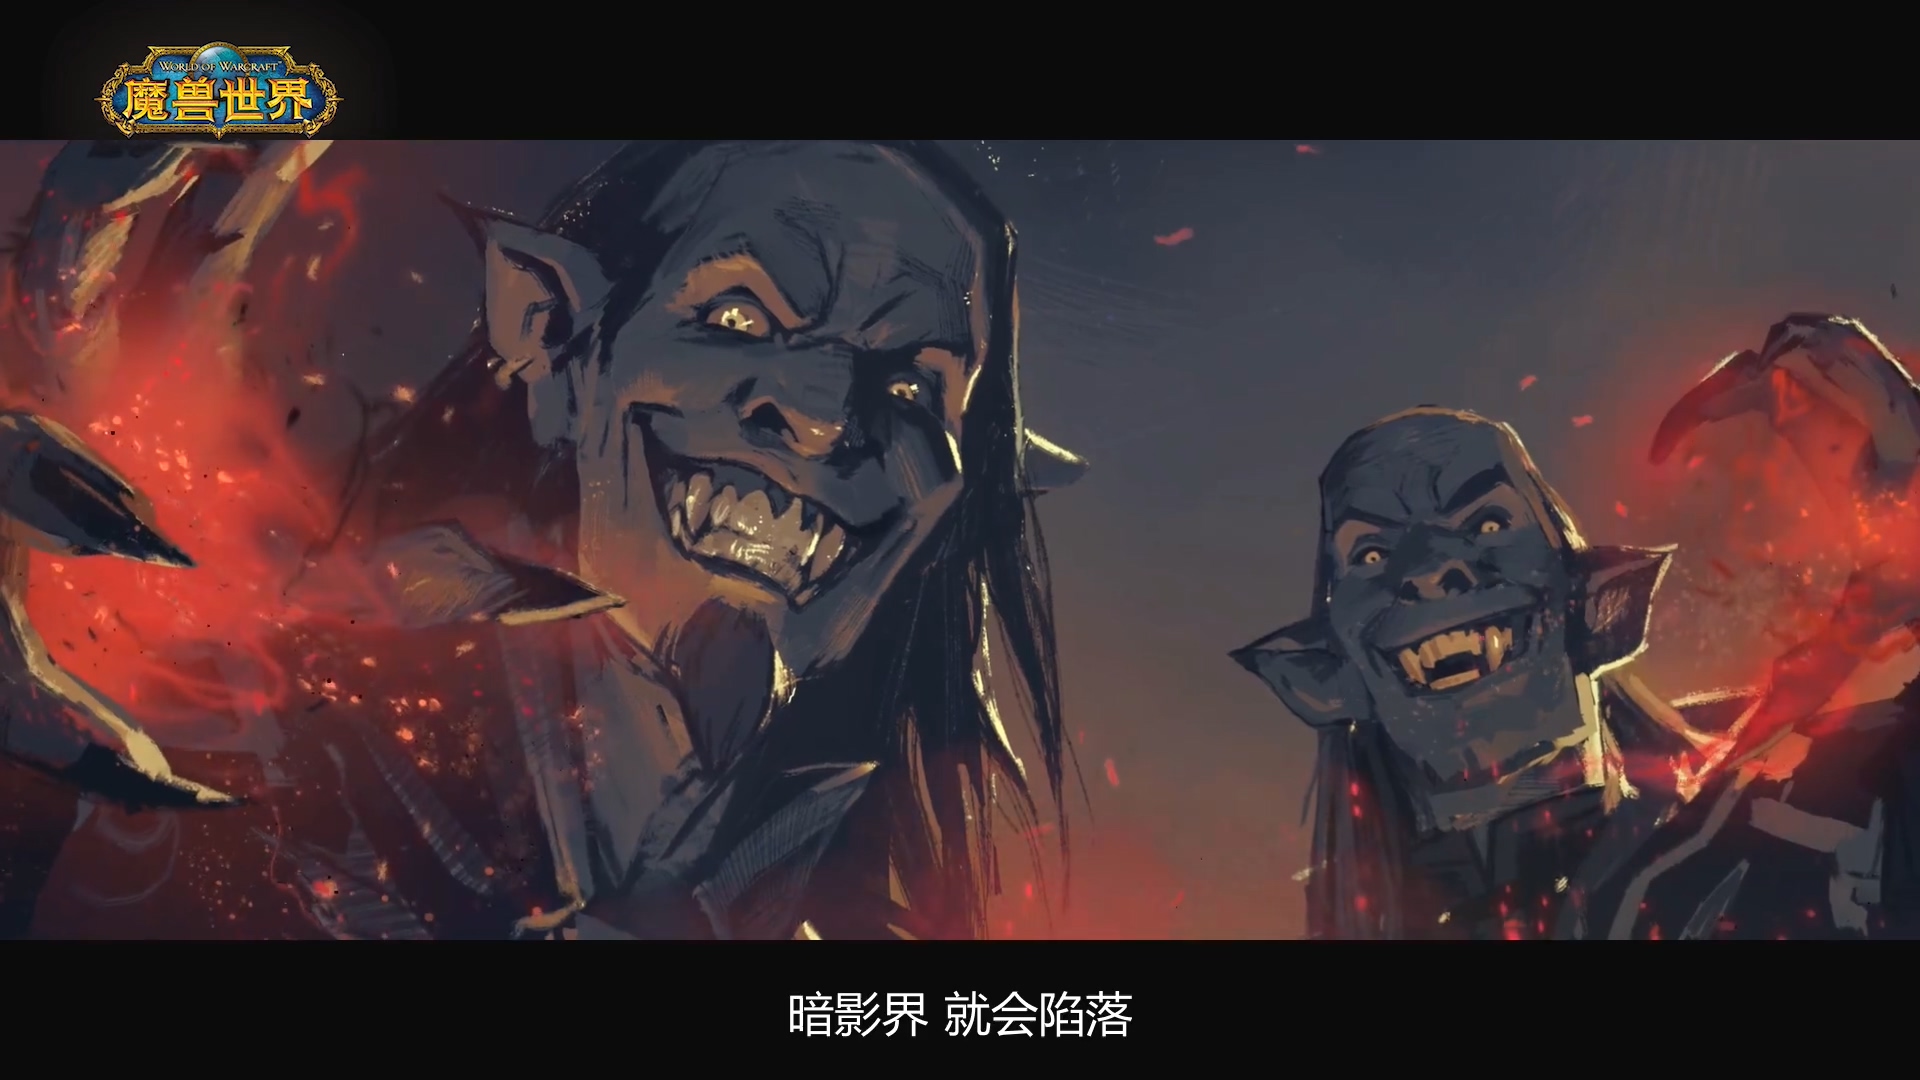 《魔獸世界》“暗影國度”系列動畫短片“彼岸之地”預告放出將於8月28日播出